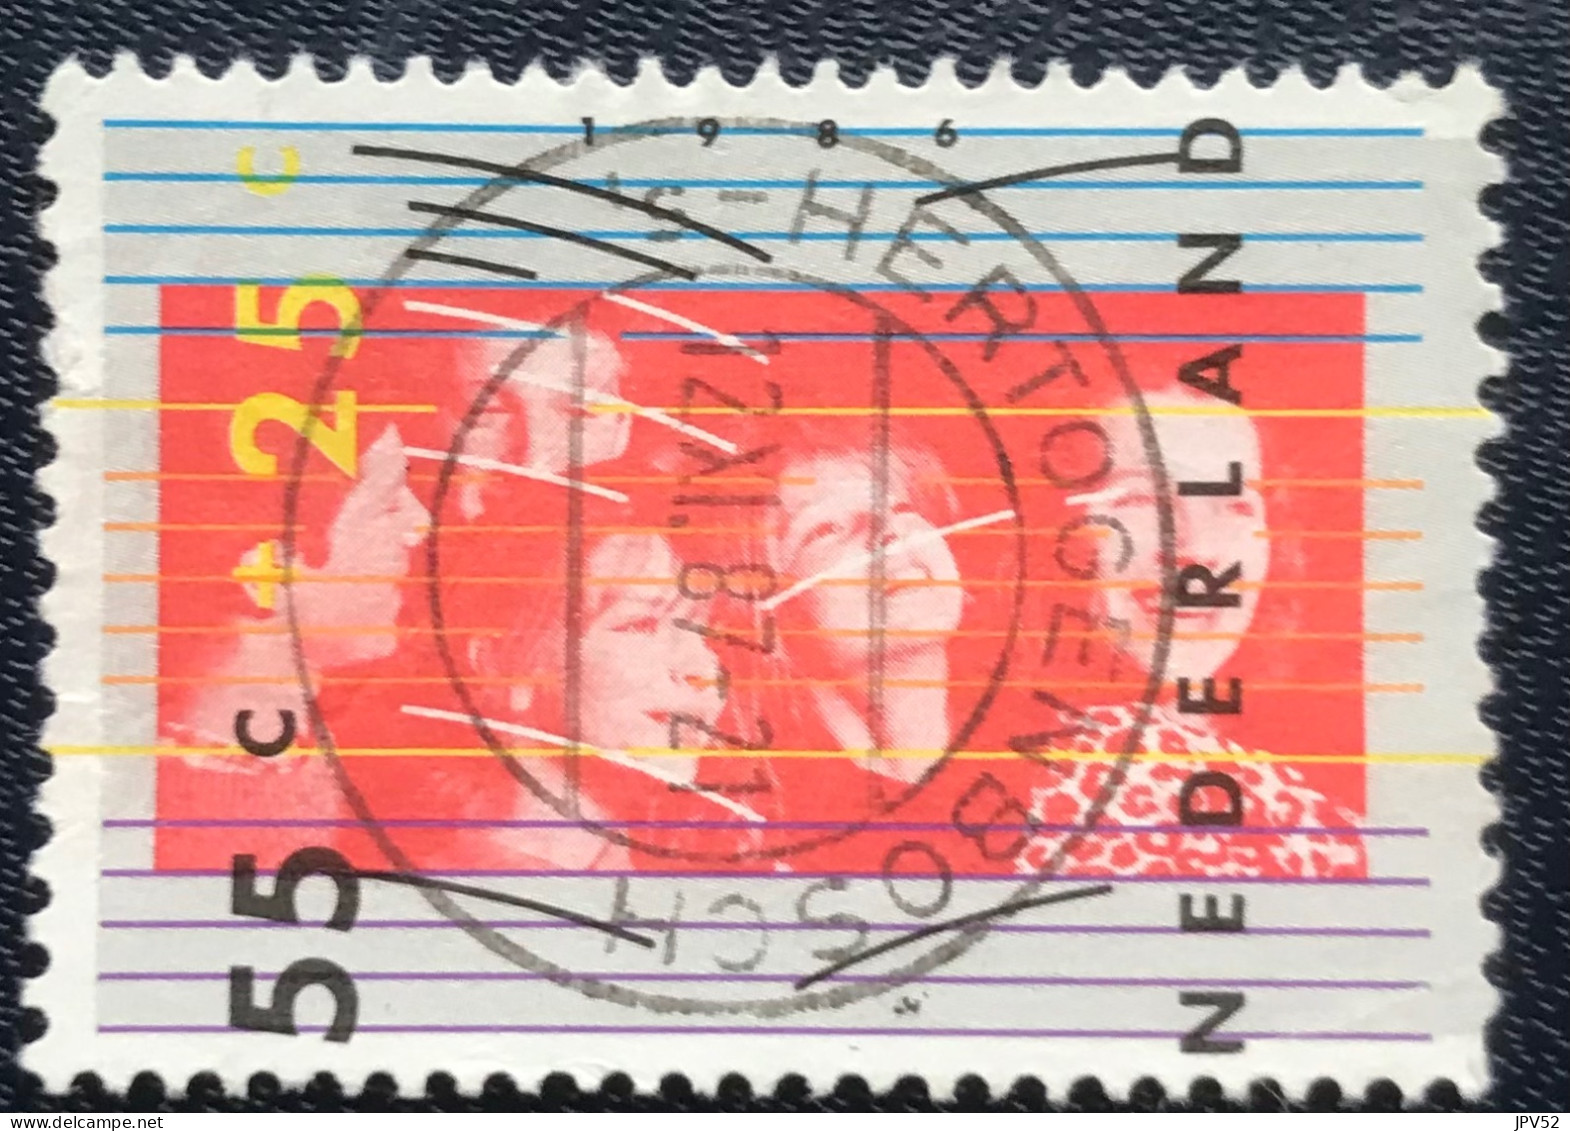 Nederland - C1/23 - 1986 - (°)used - Michel 1307 - Kinderzegel - S HERTOGENBOSCH - Oblitérés